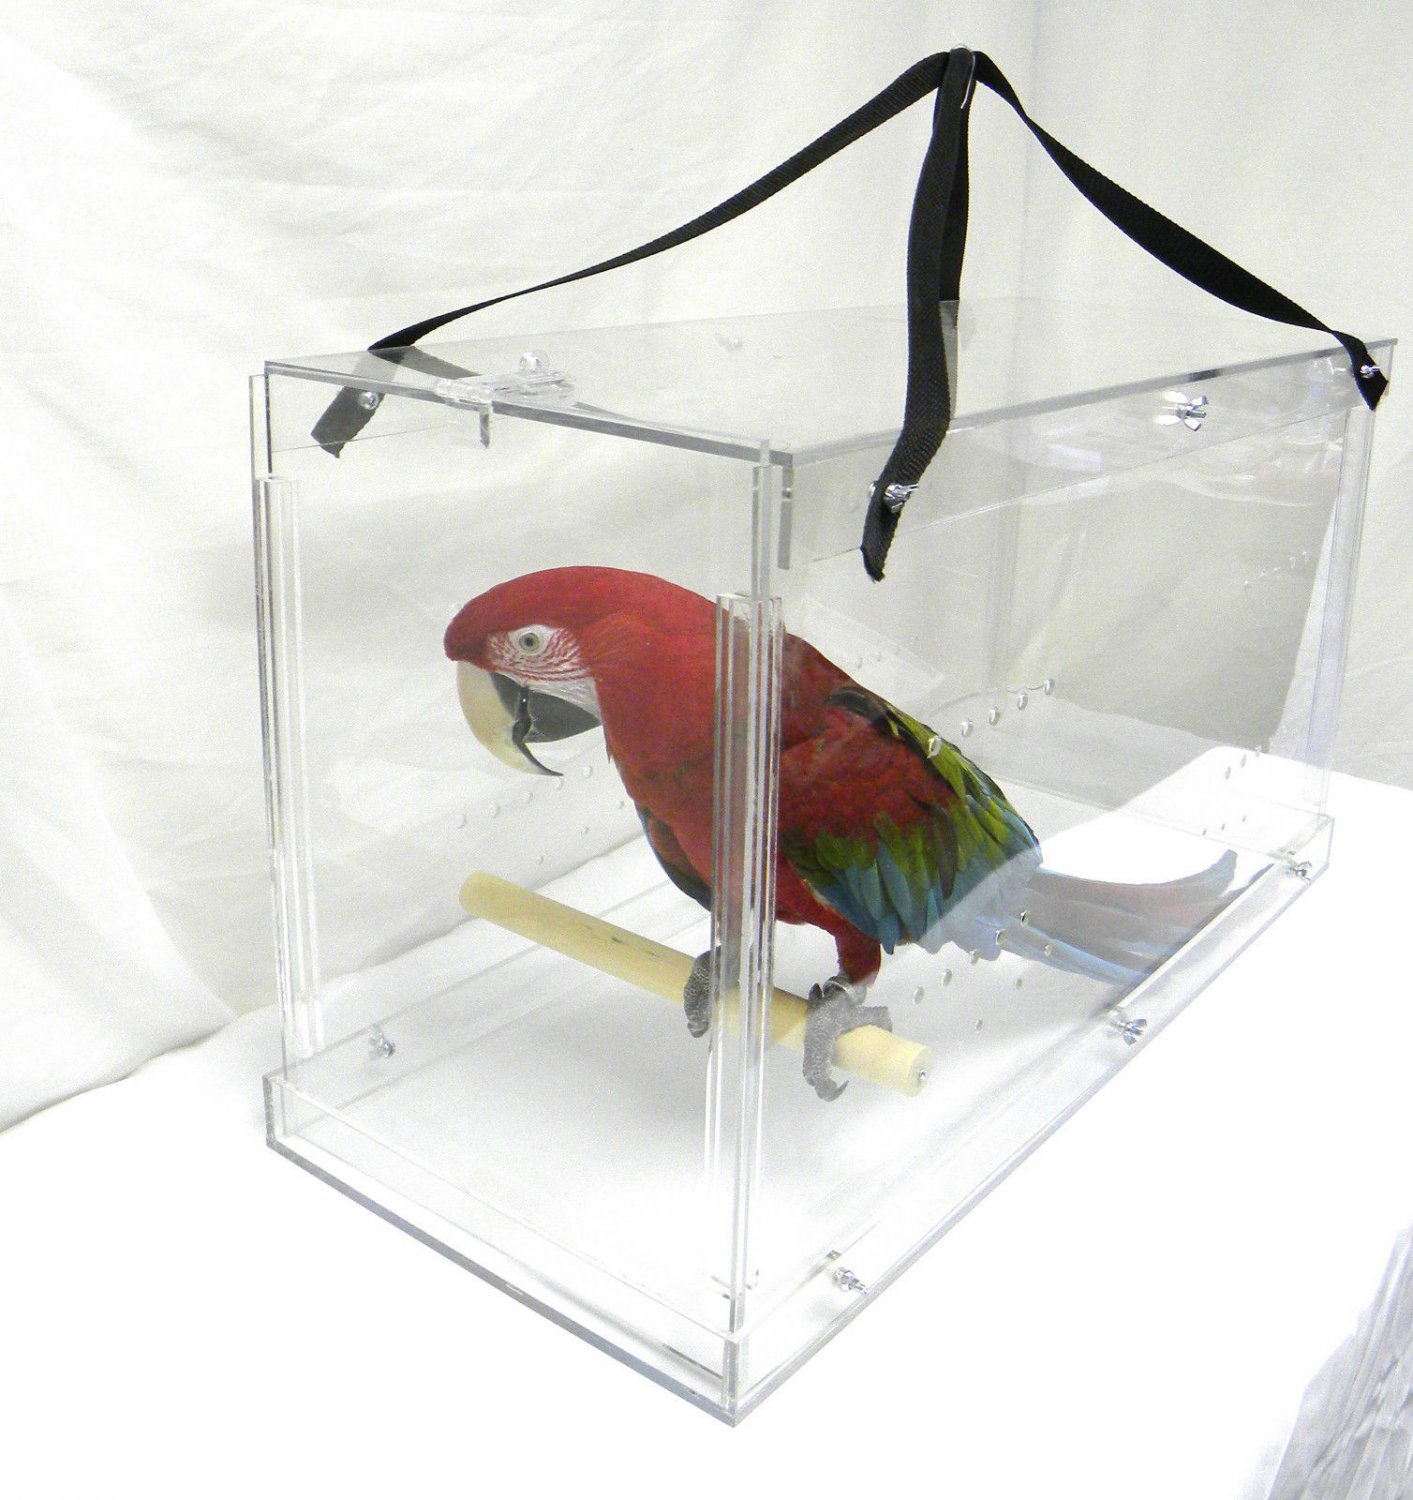 parrot travel bird carrier